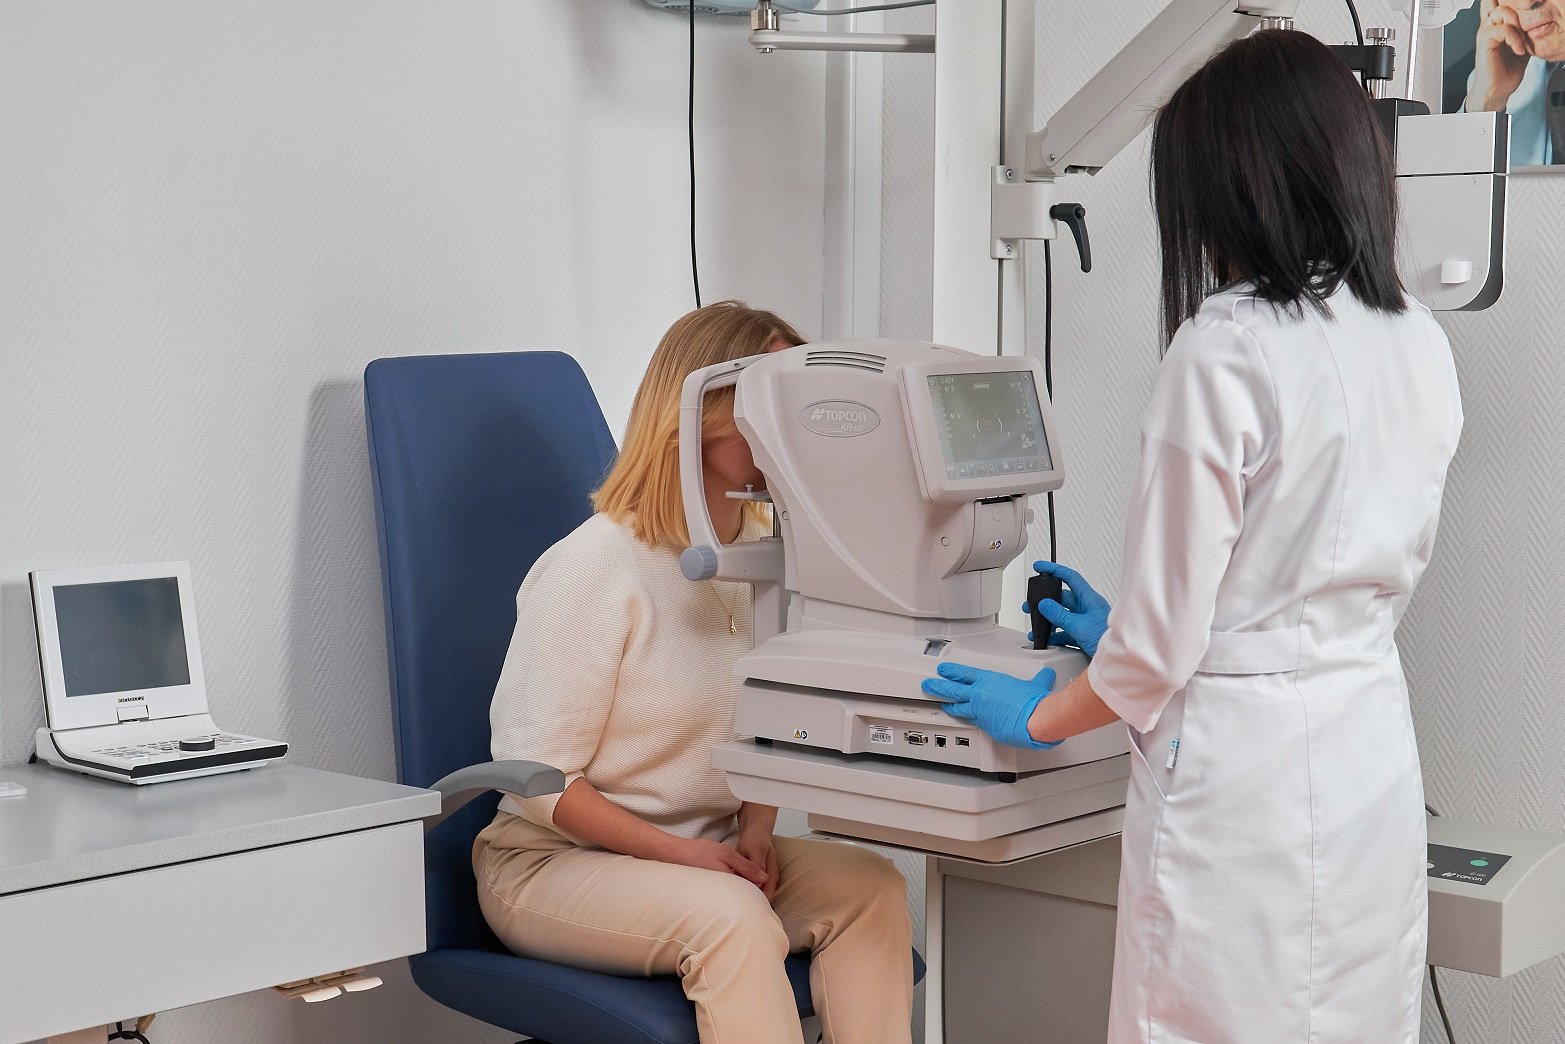 Современные стандарты офтальмологии — это бесконтактная ультразвуковая аппаратура, обеспечивающая максимальную точность исследования и комфорт для пациента